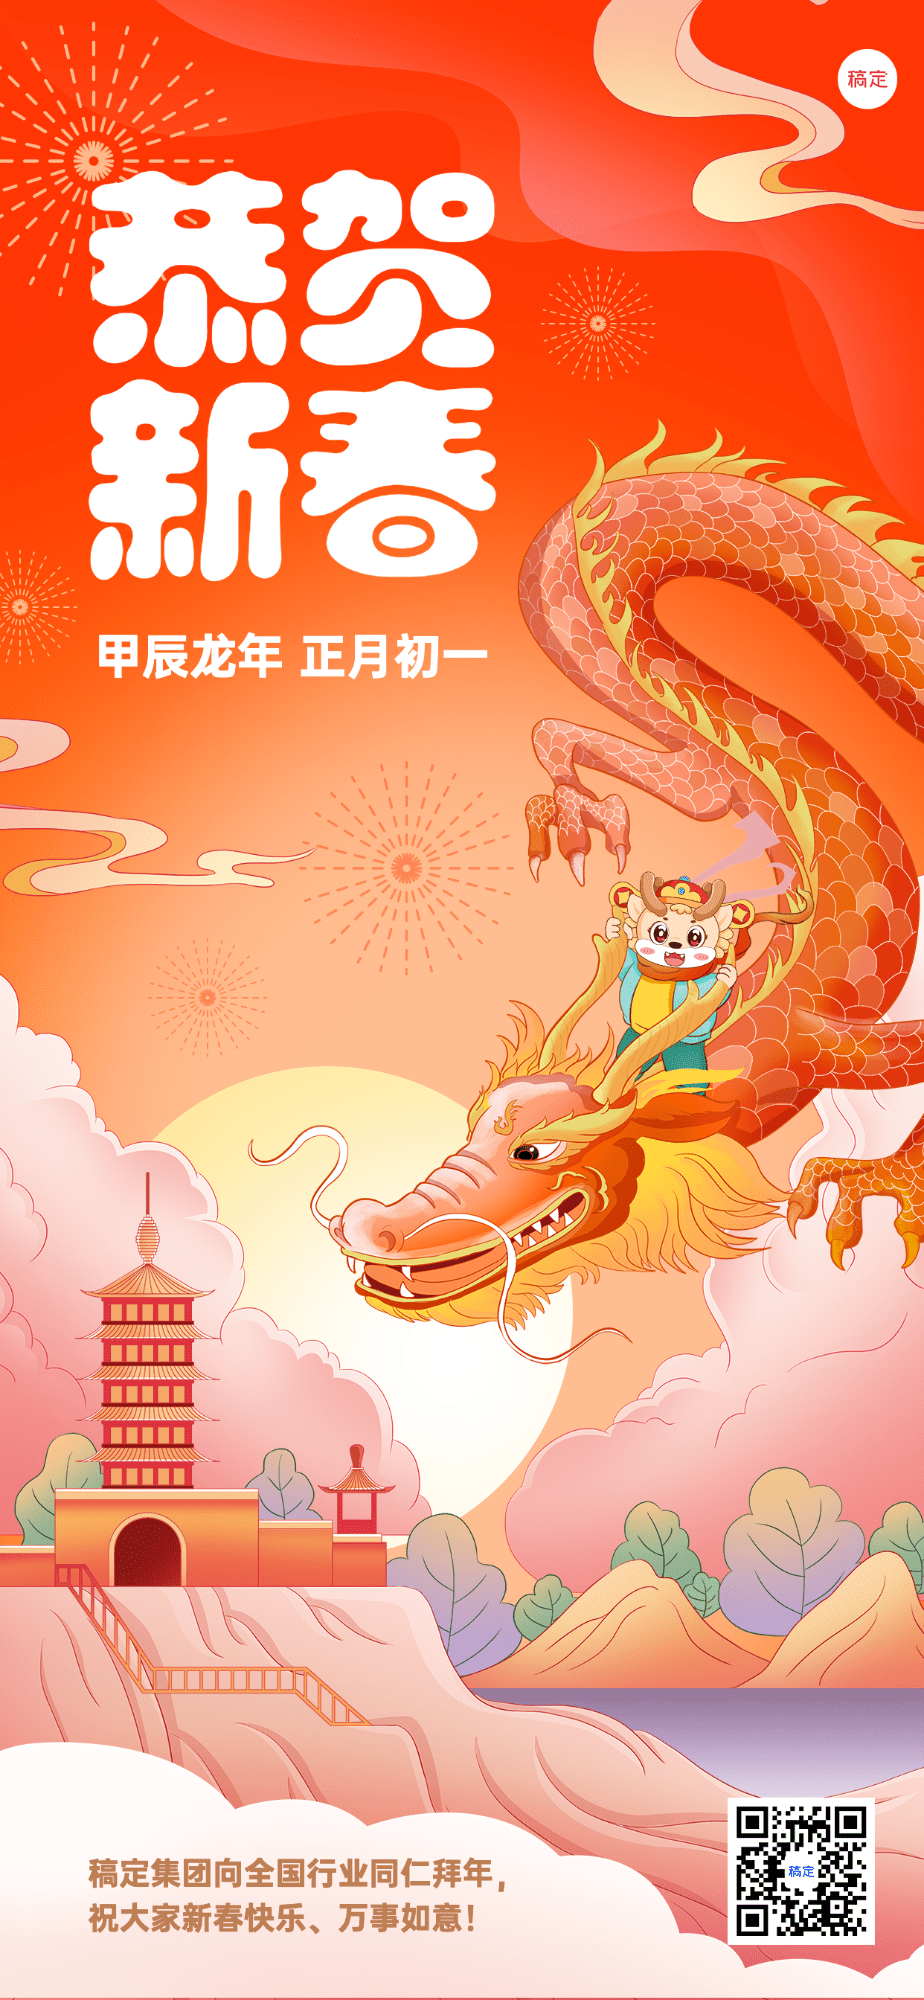 企业正月初一春节祝福插画风全屏竖版海报